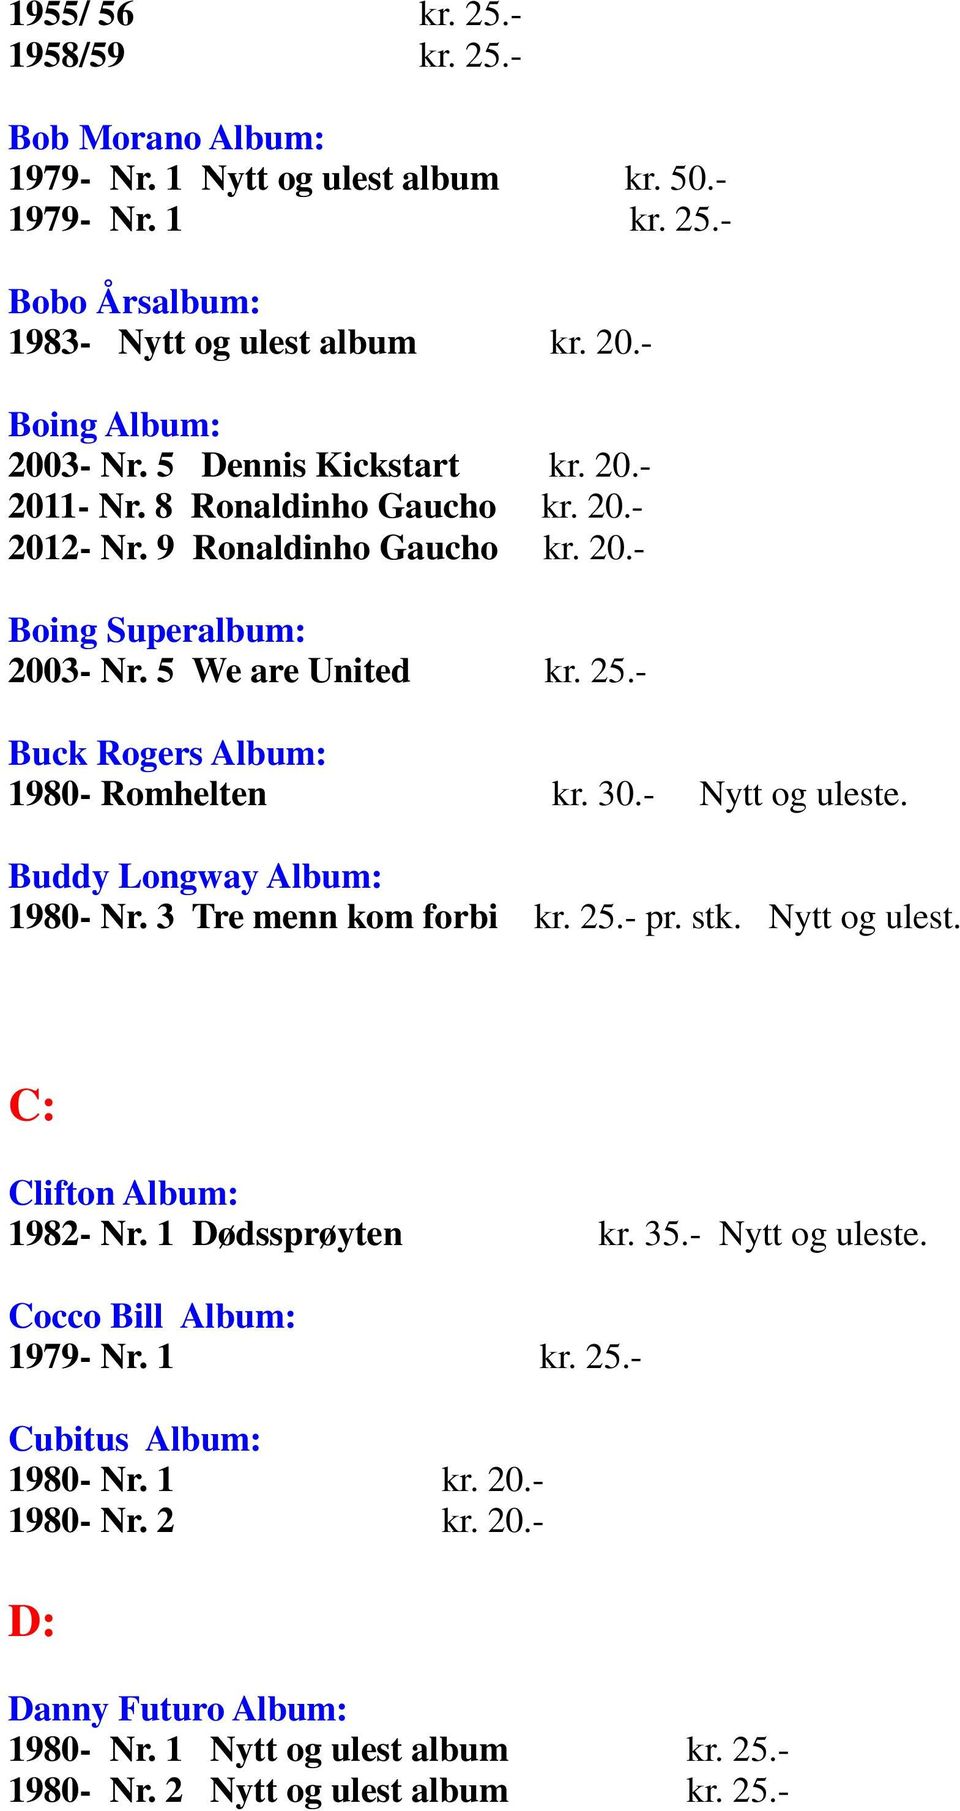 - Buck Rogers Album: 1980- Romhelten kr. 30.- Nytt og uleste. Buddy Longway Album: 1980- Nr. 3 Tre menn kom forbi kr. 25.- pr. stk. Nytt og ulest. C: Clifton Album: 1982- Nr.